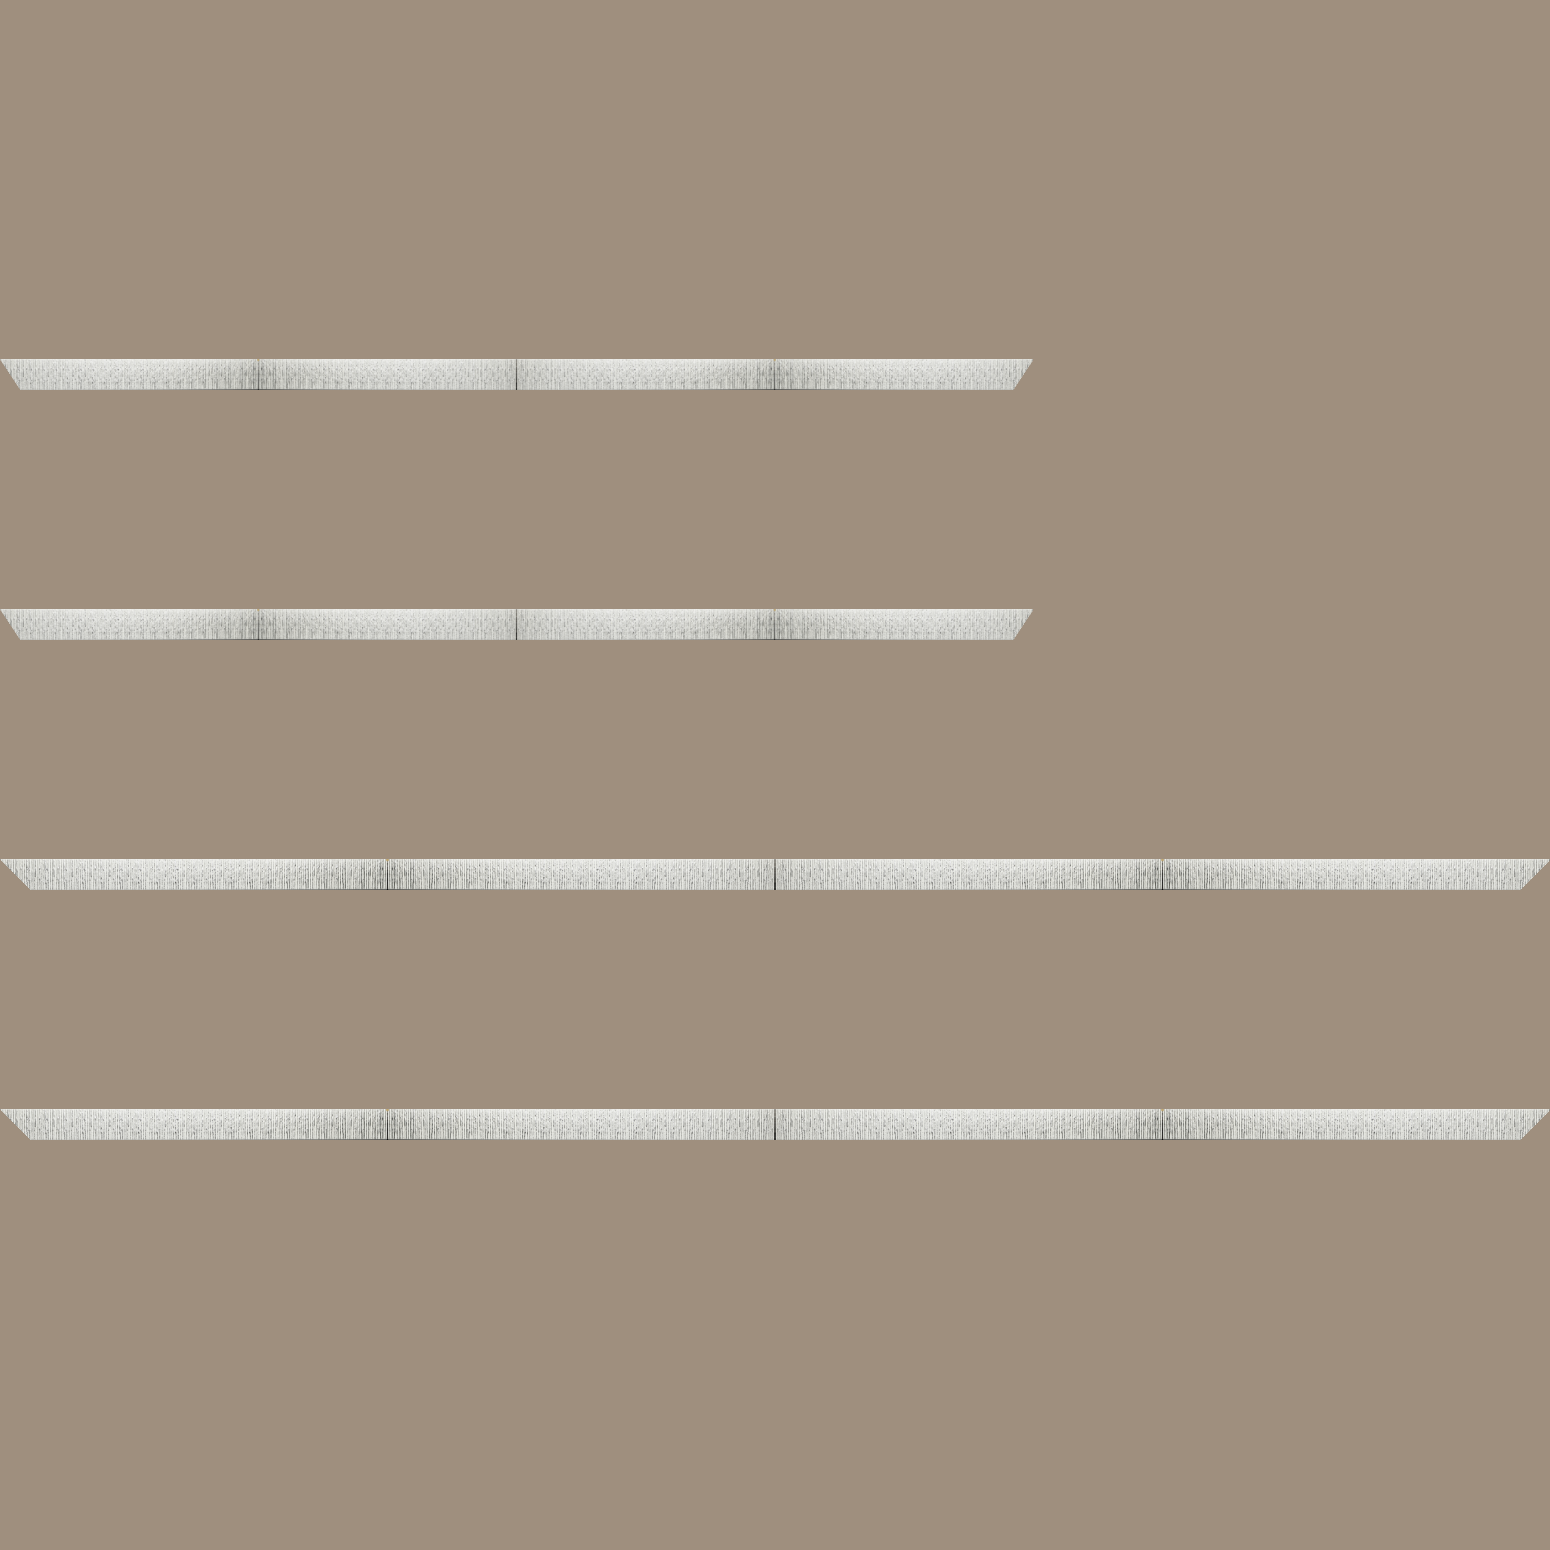 Baguette bois profil plat largeur 10.5cm couleur blanc mat strié argent chromé en relief - 30x90